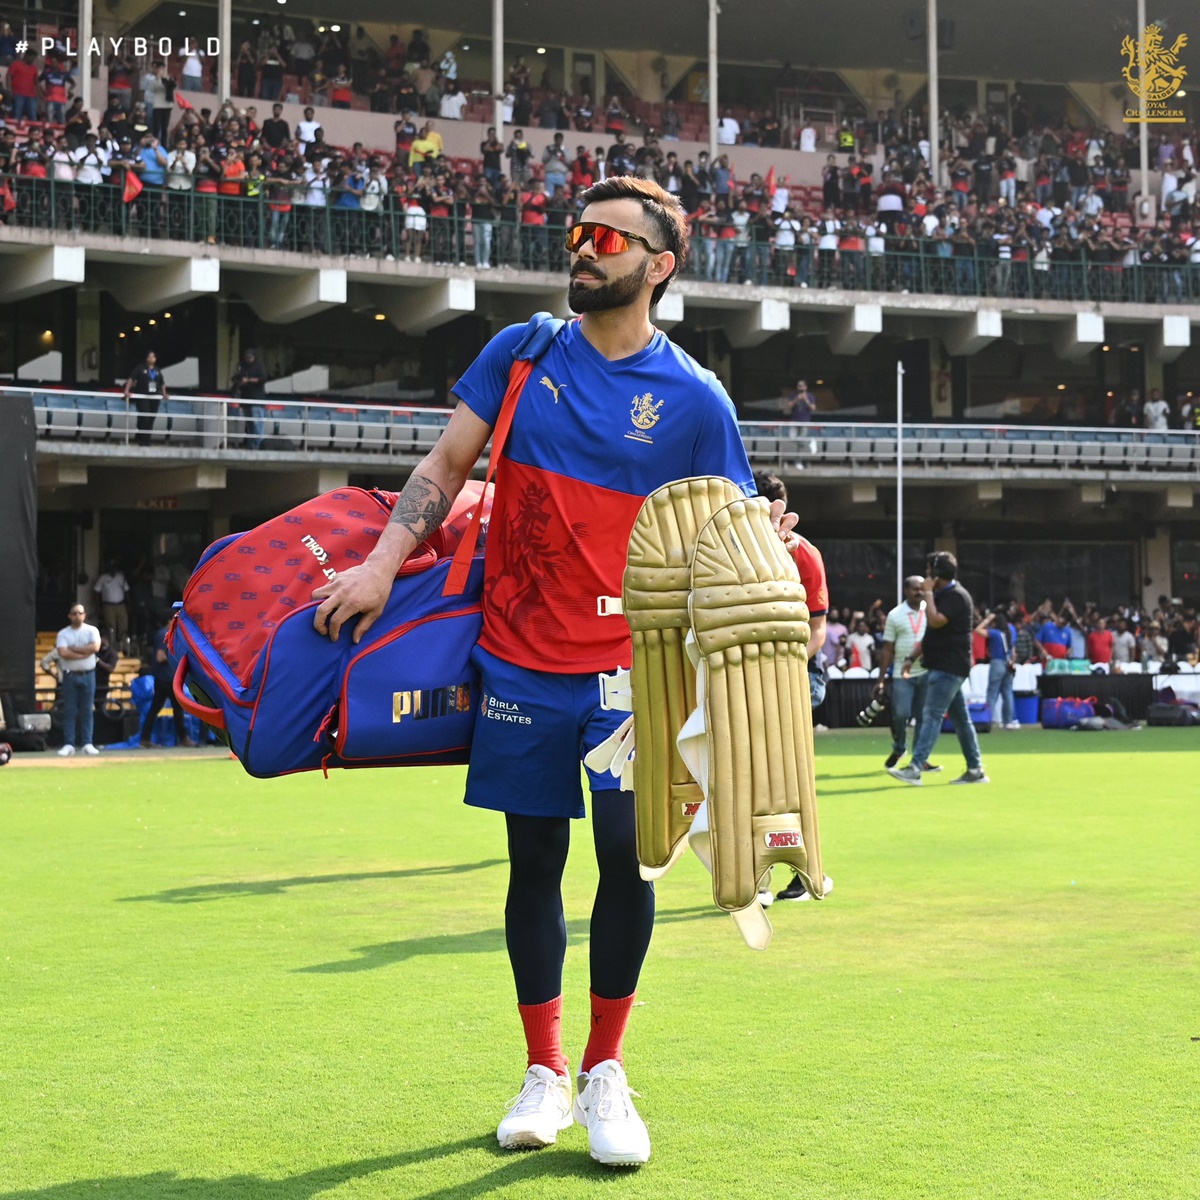 Kohli's wicket will be key at tricky Chepauk: Hayden